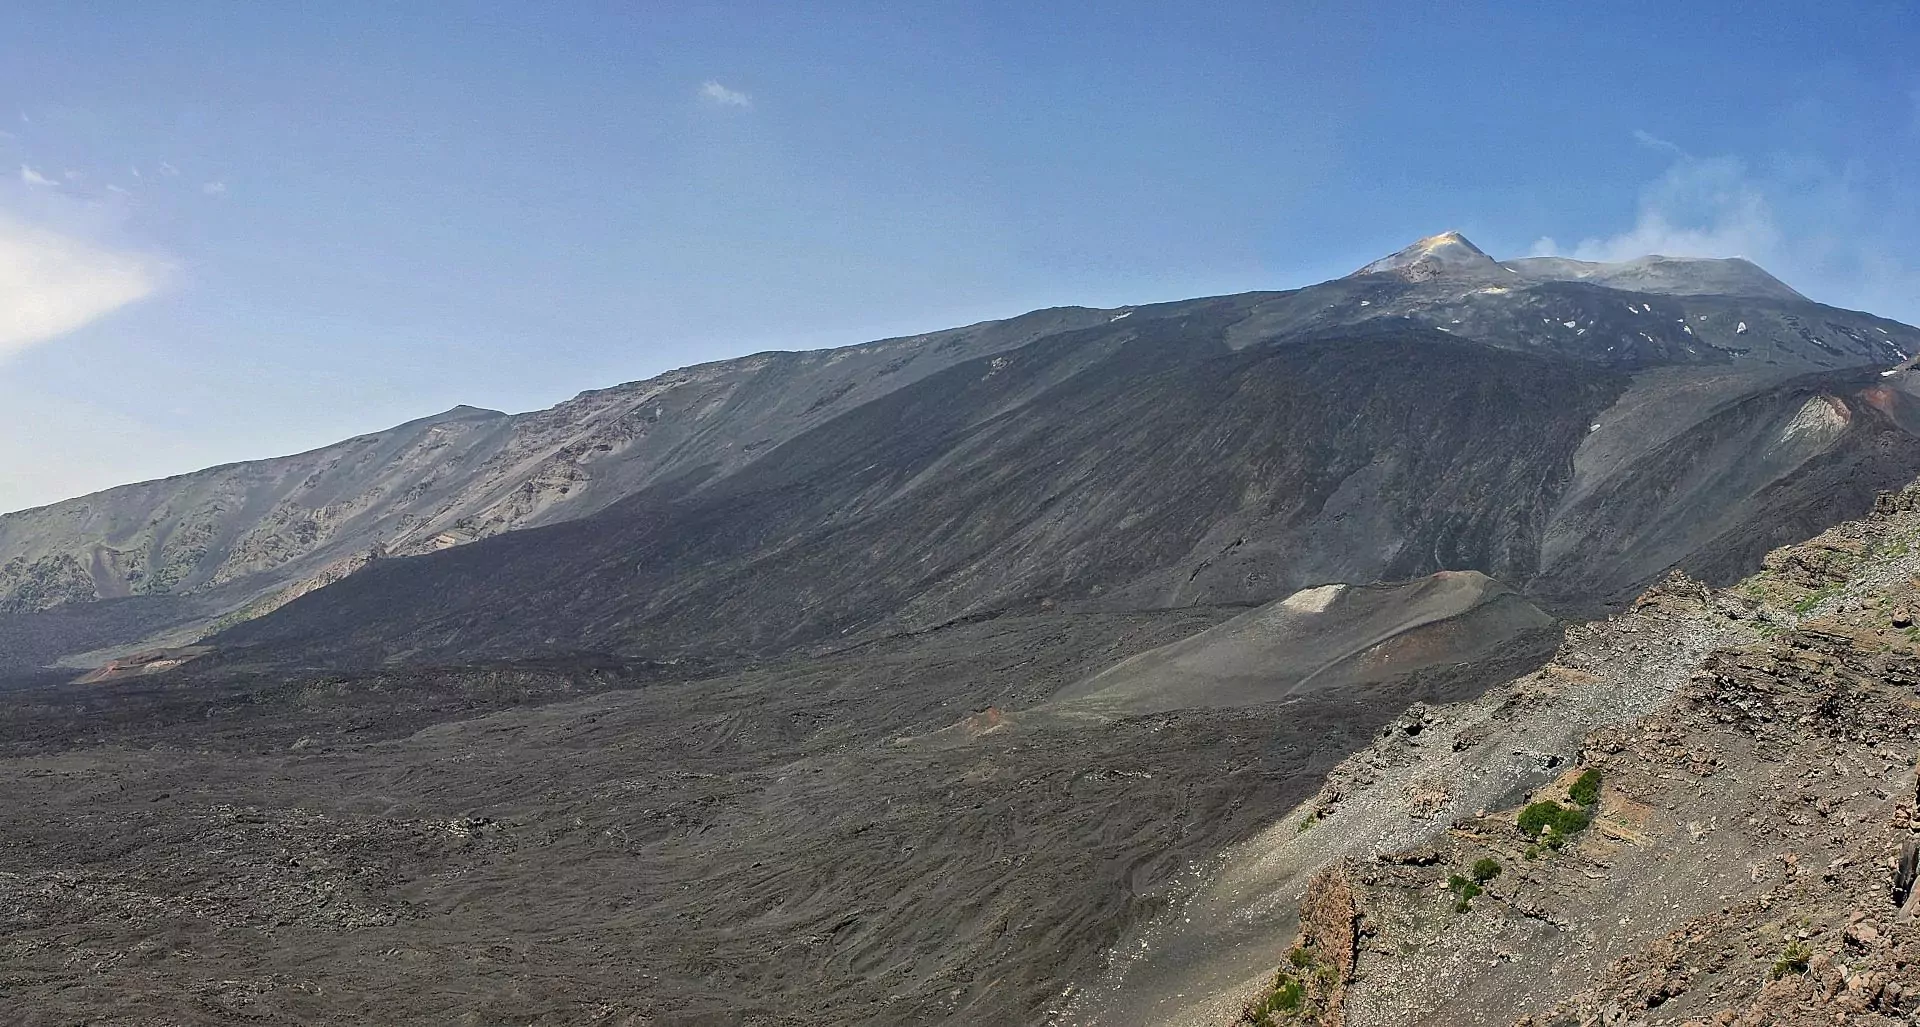 La Valle del Bove: un'enorme rientranza sul versante orientale dell'Etna, creata dal crollo della precedente cima